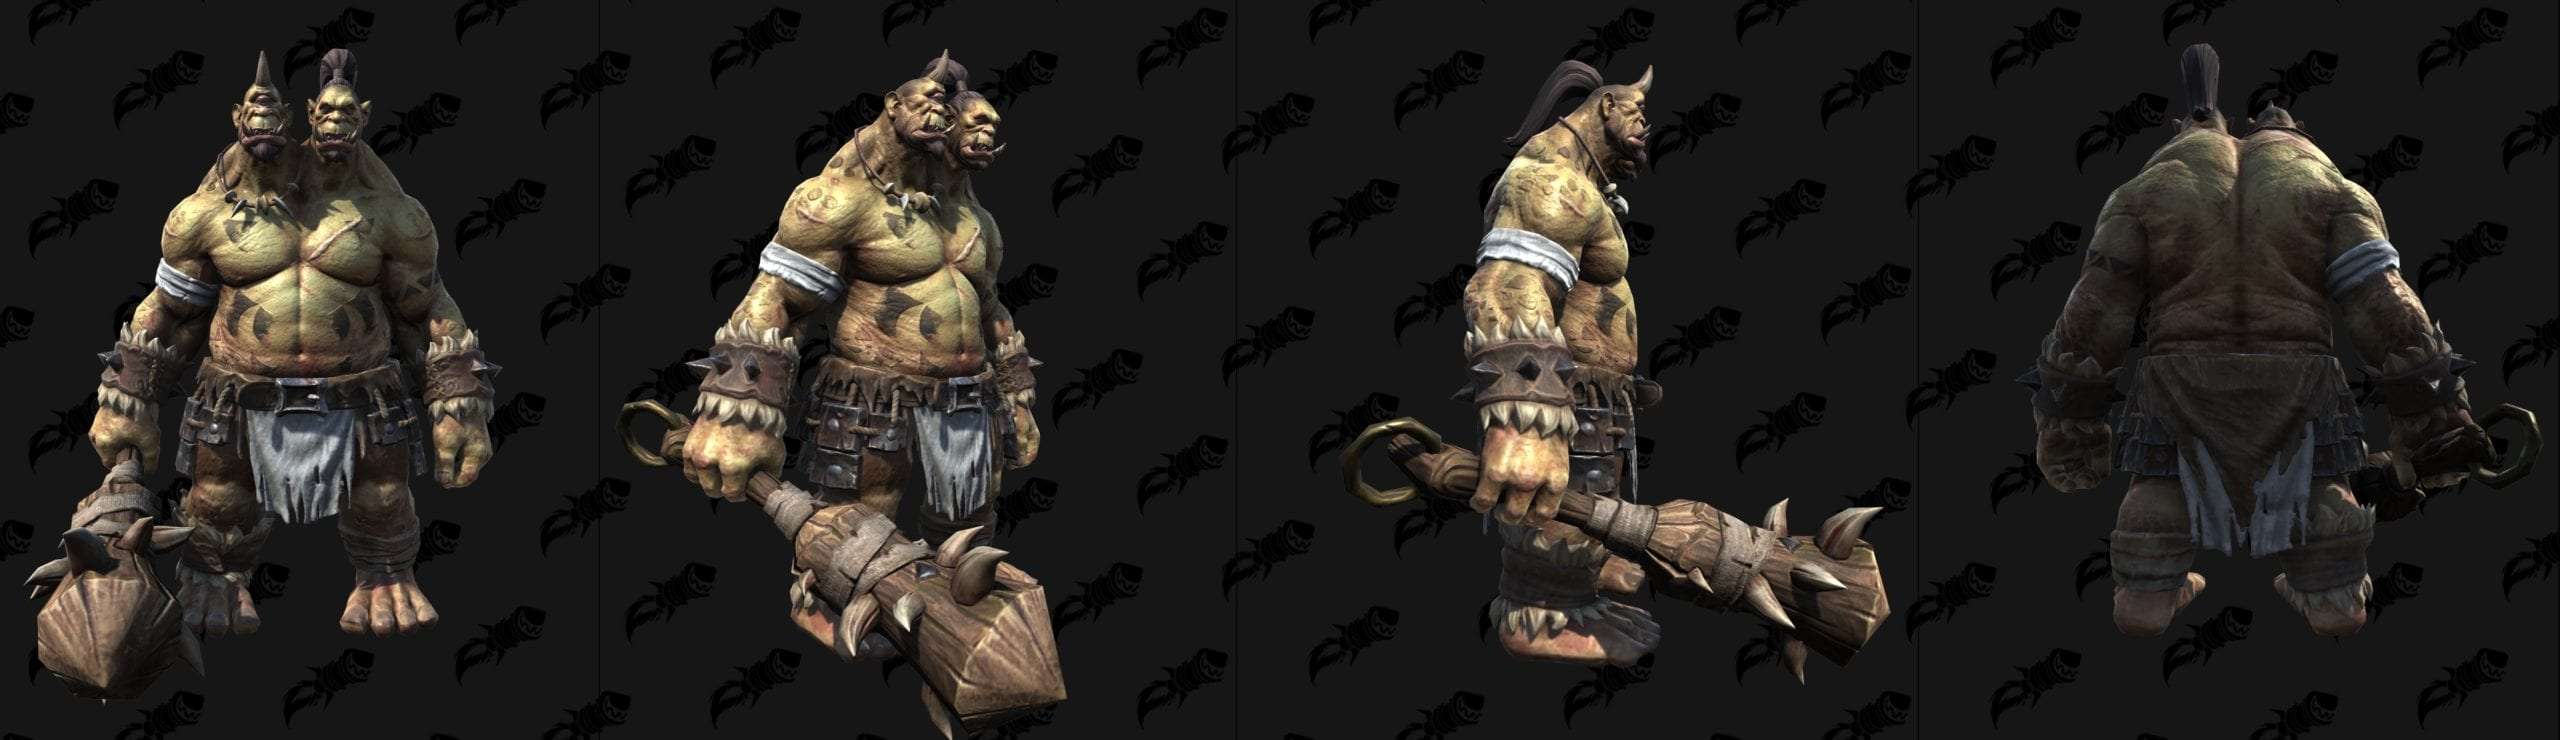 Warcraft 3 Reforged Ogre